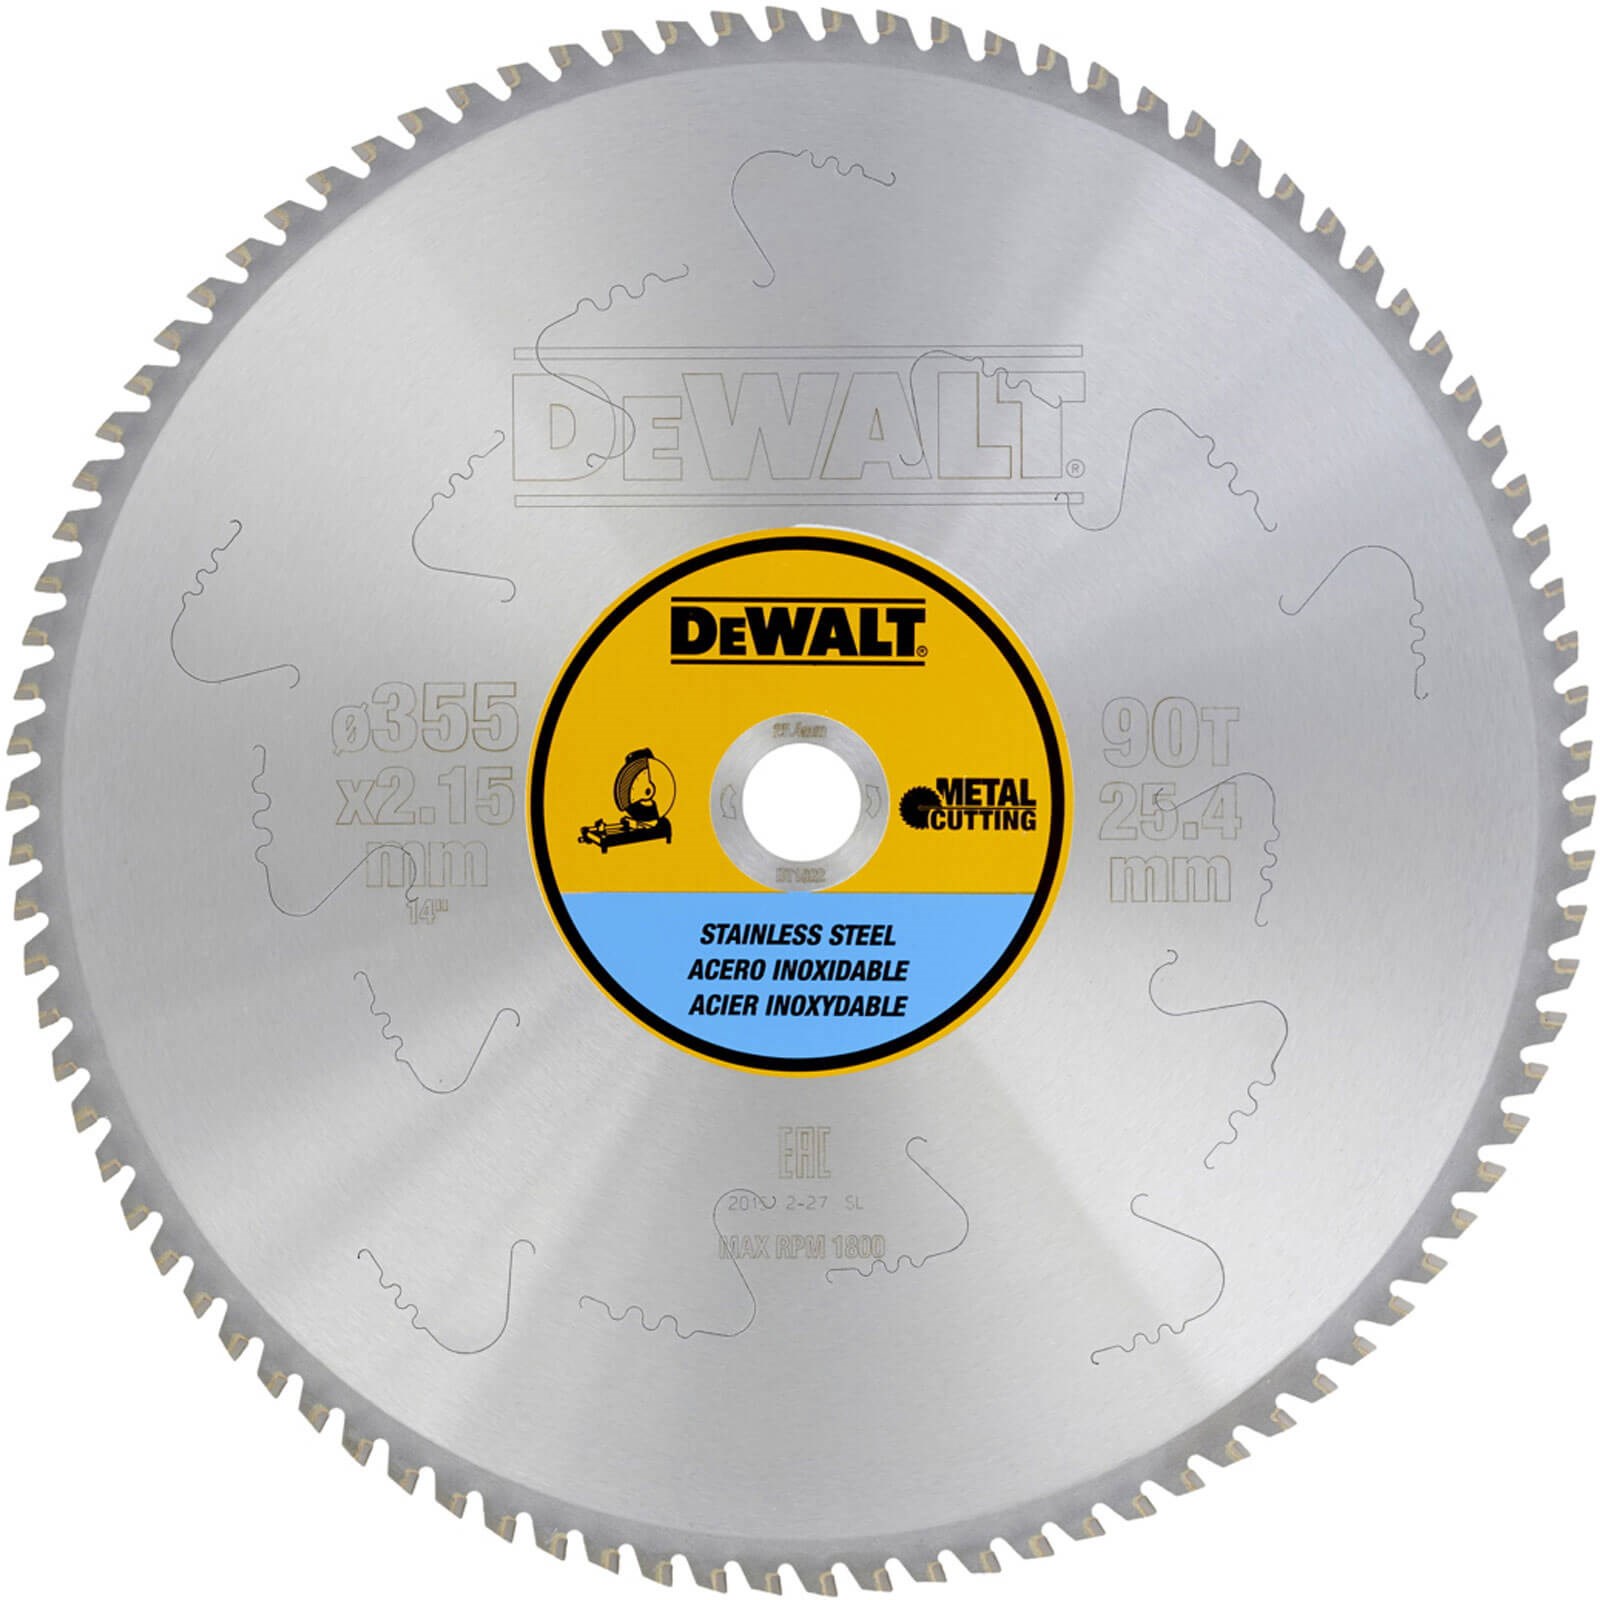 DEWALT 14-Inch Metal Cutting Blade, Ferrous Metal Cutting, 66-Tooth  (DWA7747)